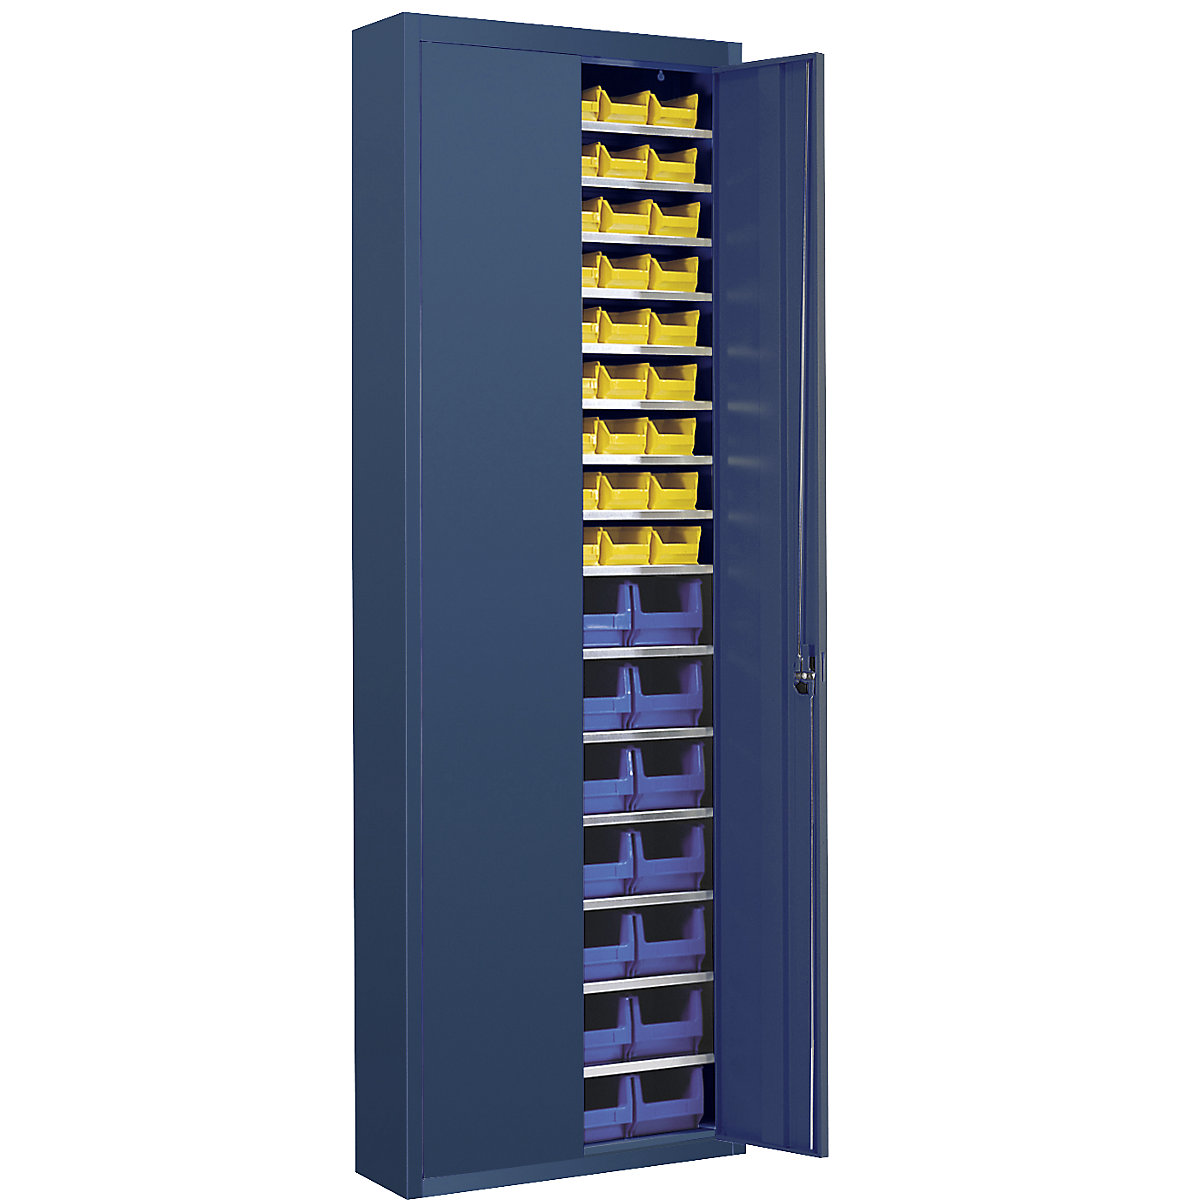 Skladová skříň s přepravkami s viditelným obsahem – mauser, v x š x h 2150 x 680 x 280 mm, jednobarevné, modrá, 82 přepravek-7